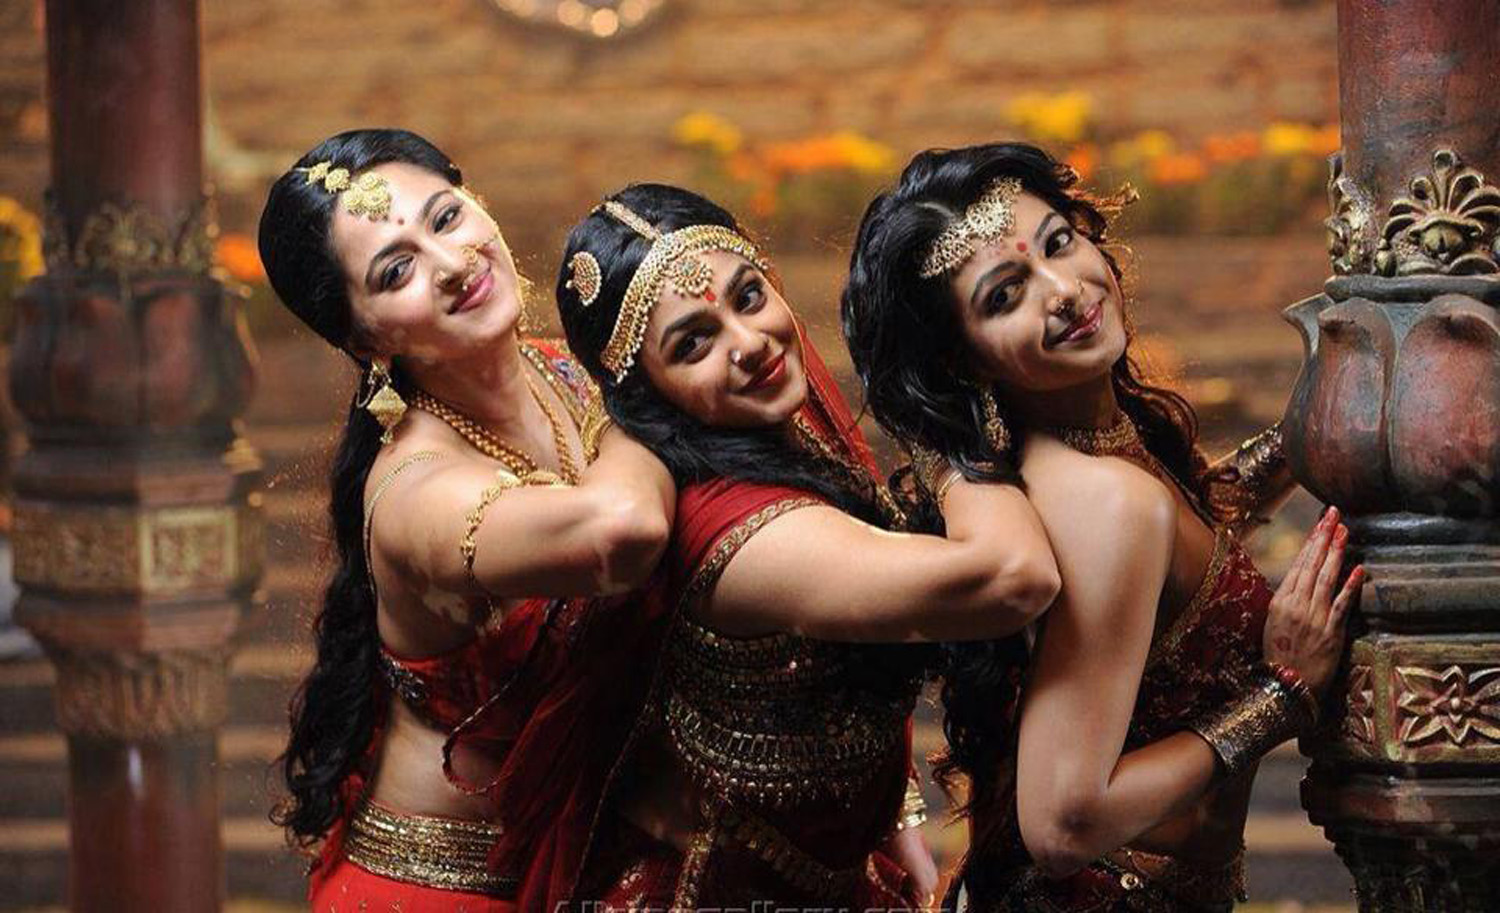 Rudhramadevi Stills-Images-Photos-Allu Arjunu-Anushka Shetty-Telugu Movie 2015-Onlookers Media